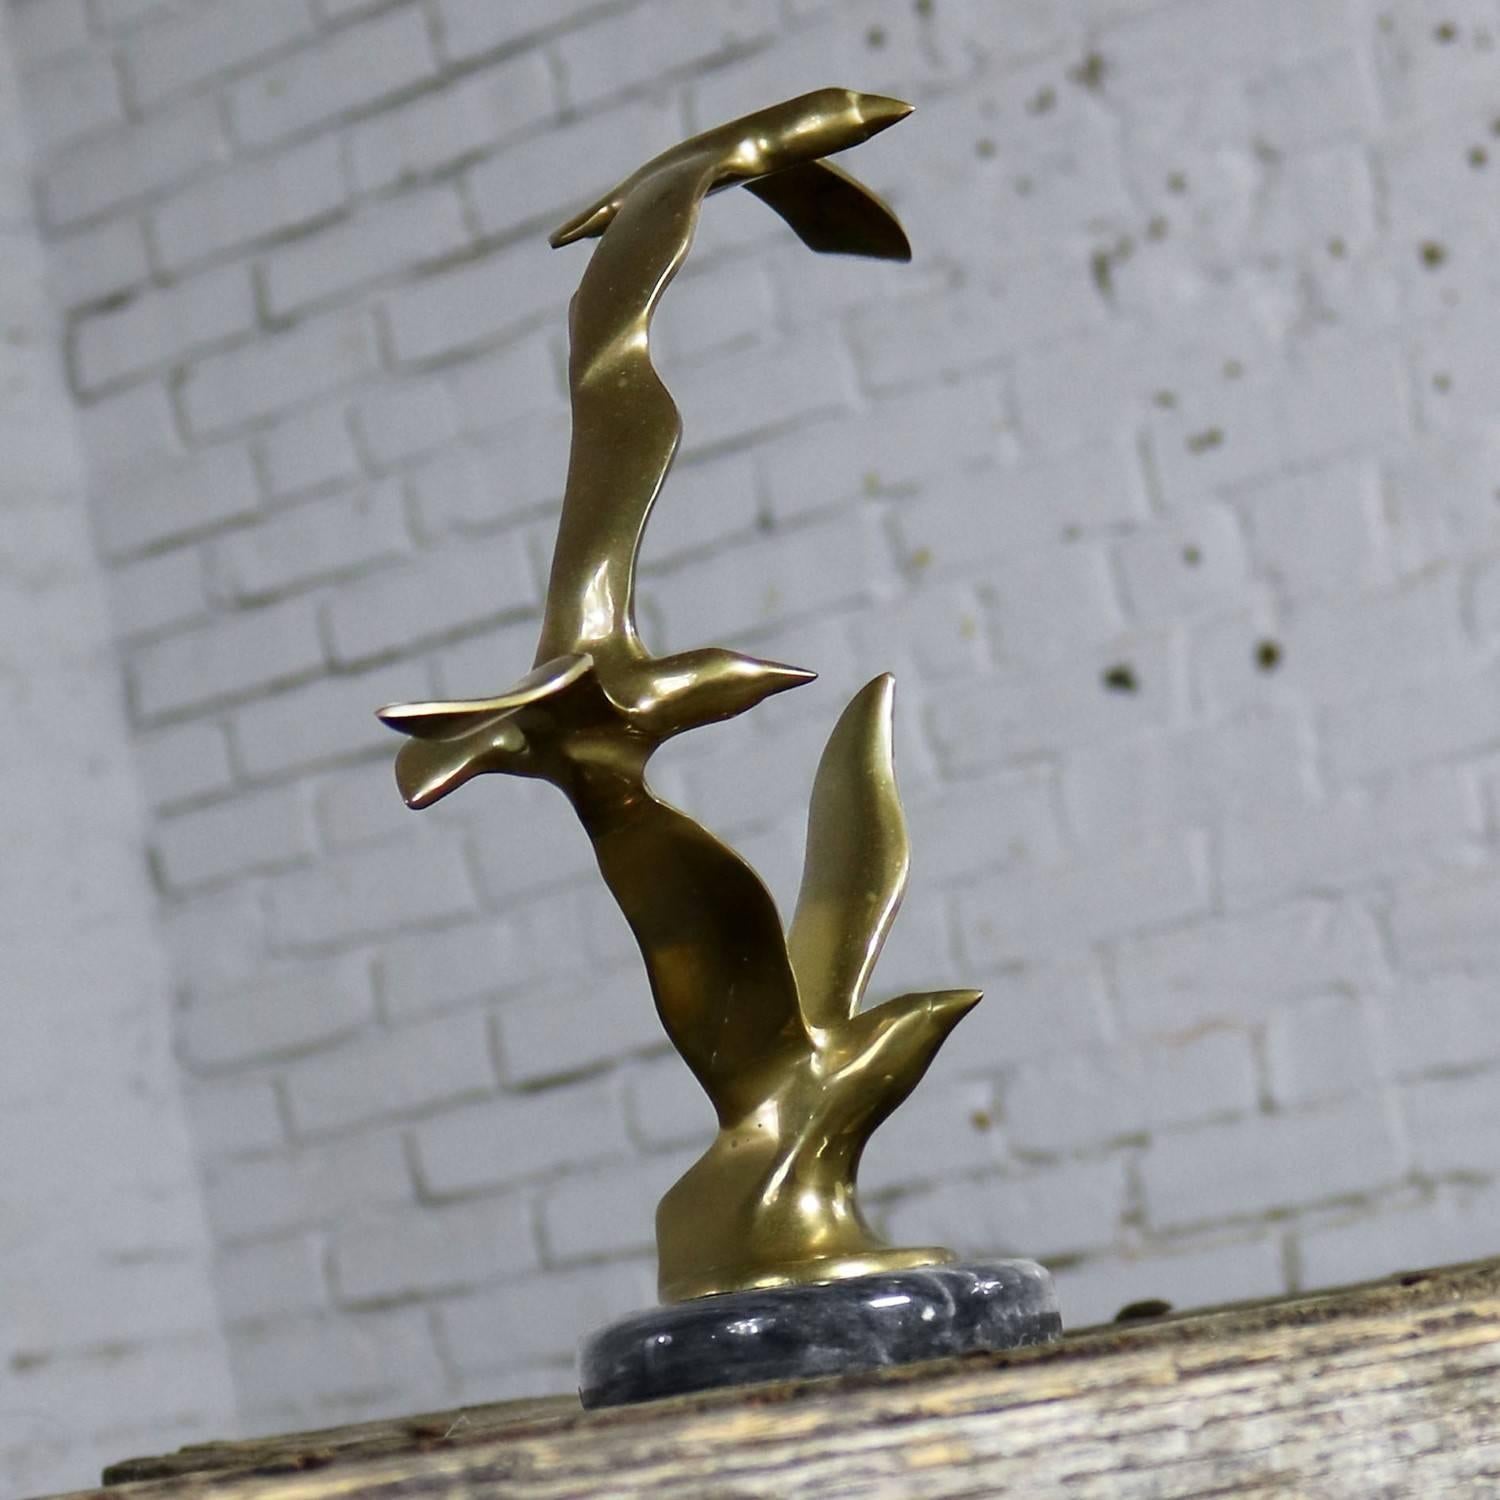 Mid-Century Modern drei Vögel im Flug Messing-Skulptur auf einem runden schwarzen Marmorsockel im Stil von C. Jere. Diese ist unsigniert. In gutem Vintage-Zustand, ca. 1960er-1980er Jahre.

Ein toller Möwenschwarm! Diese Skulptur aus Messing und